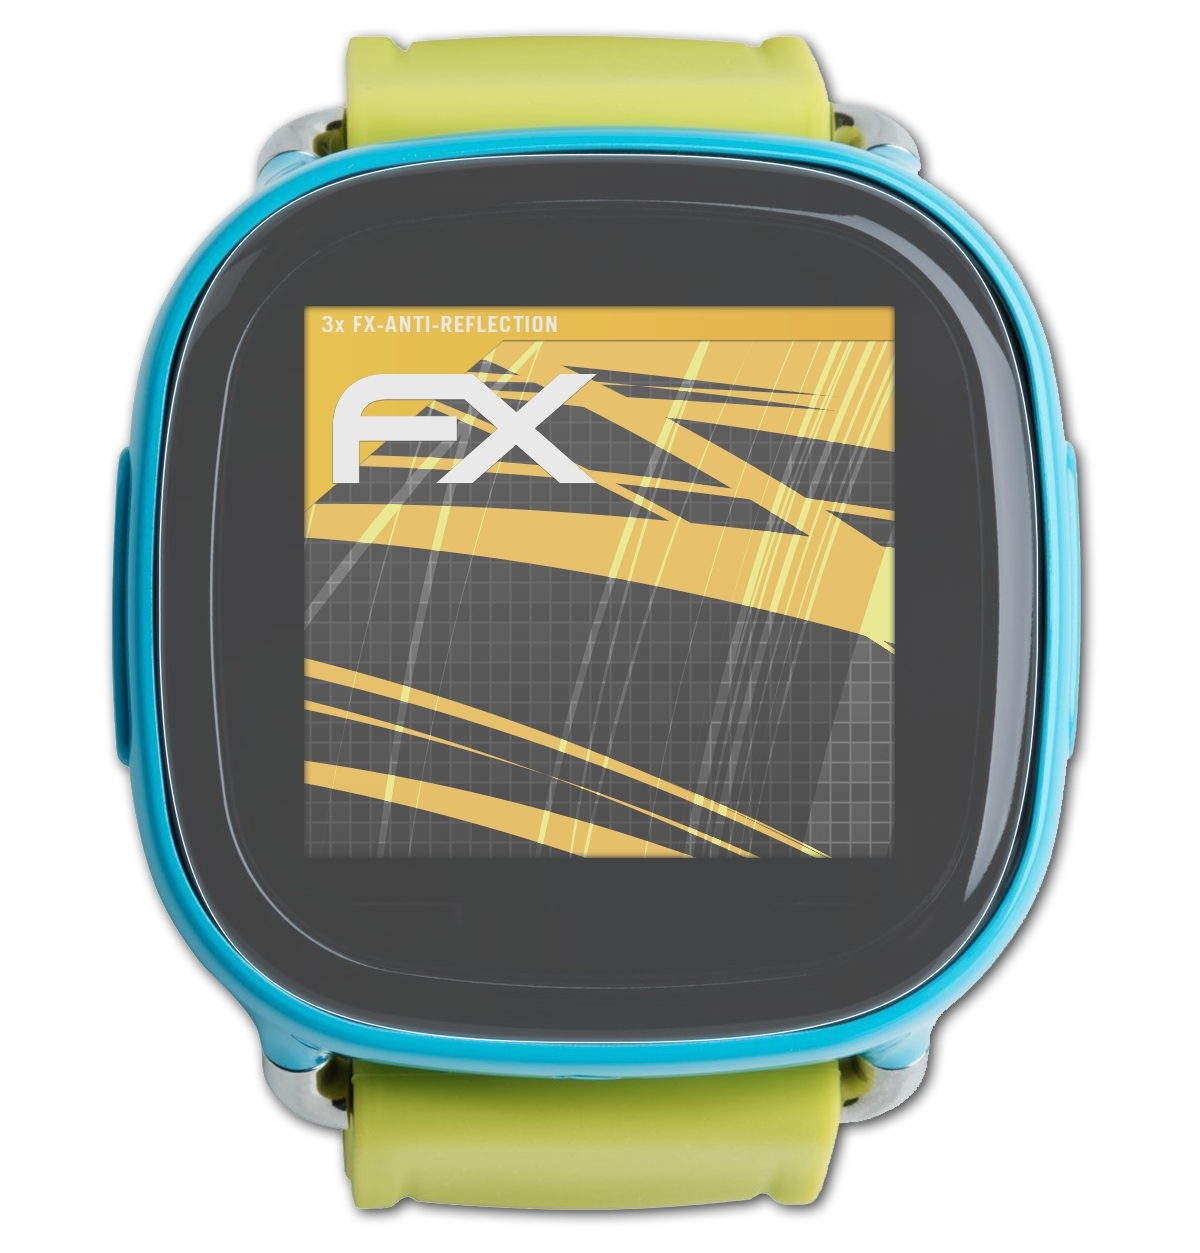 Displayschutz(für XPlora FX-Antireflex Kids) ATFOLIX 3x